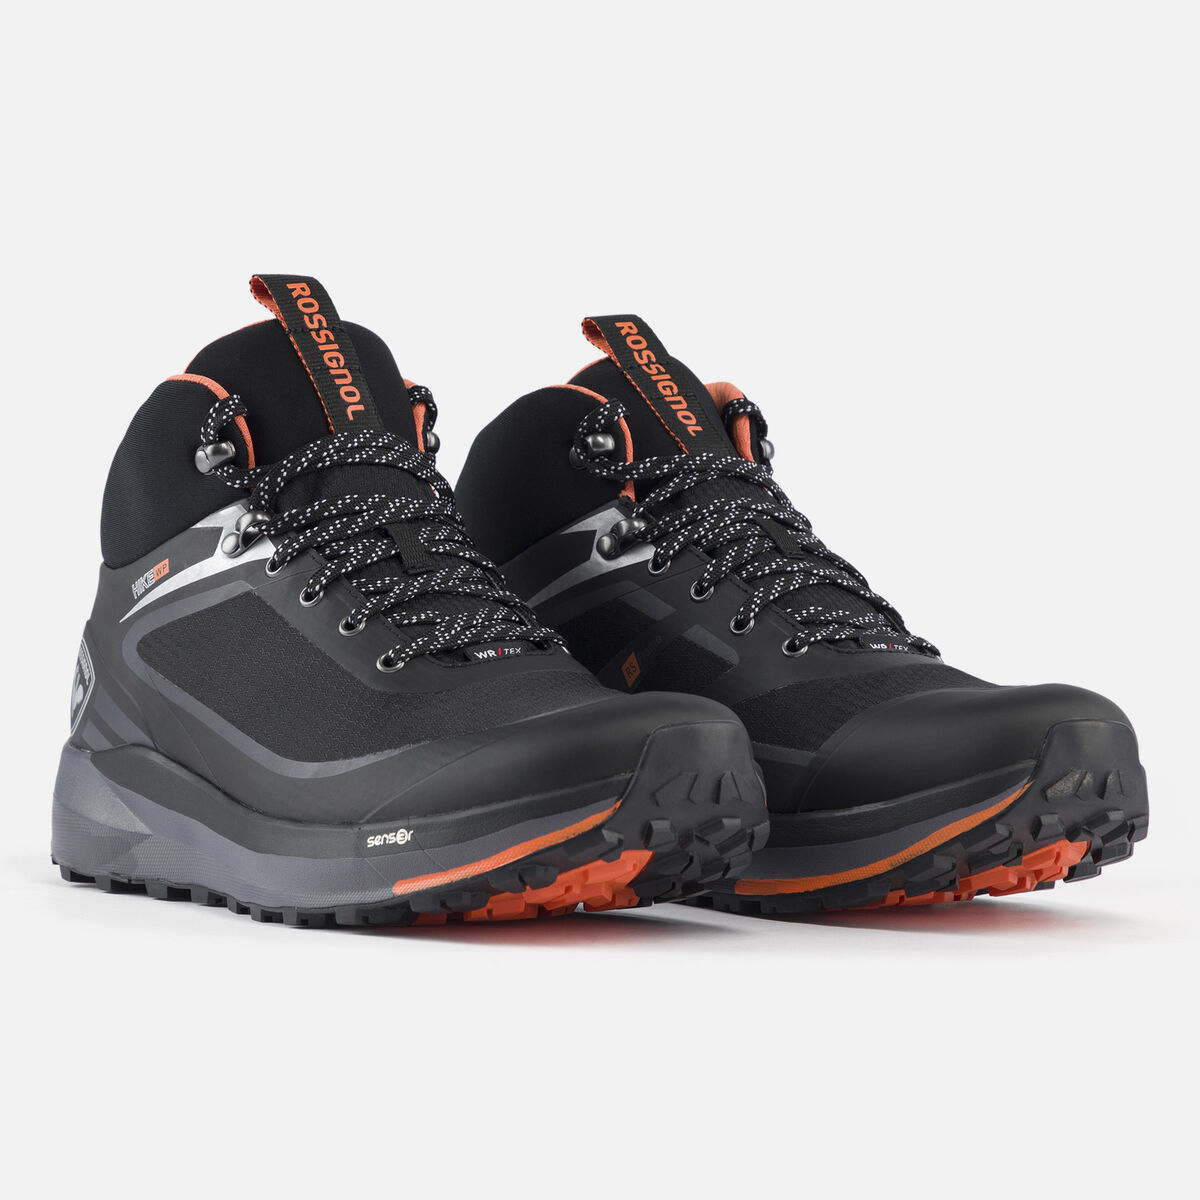 Rossignol Men's black waterproof hiking shoes black